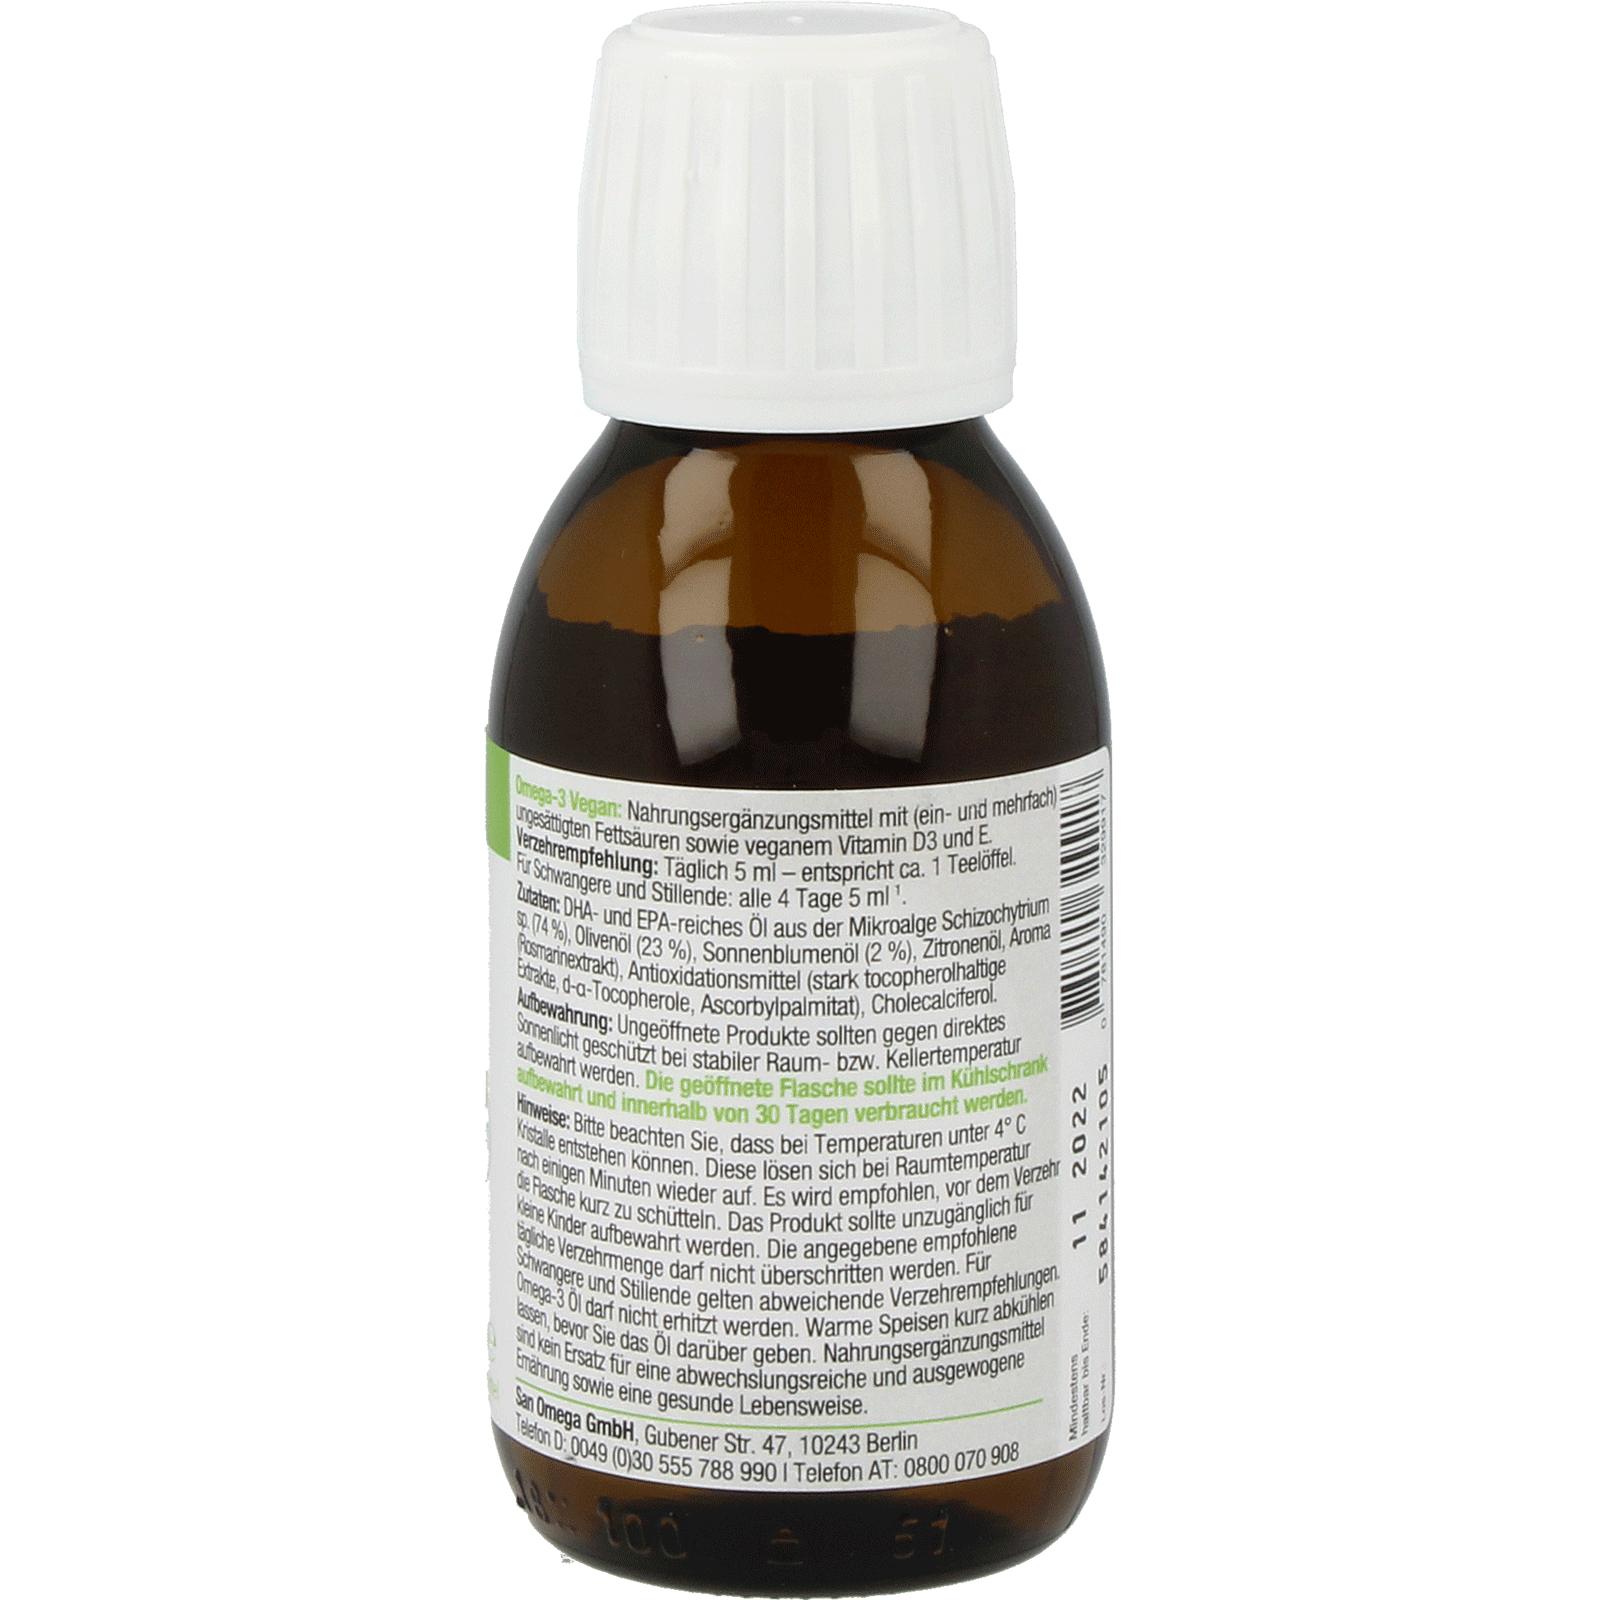 NORSAN Omega-3 Vegan - littlehealthstore